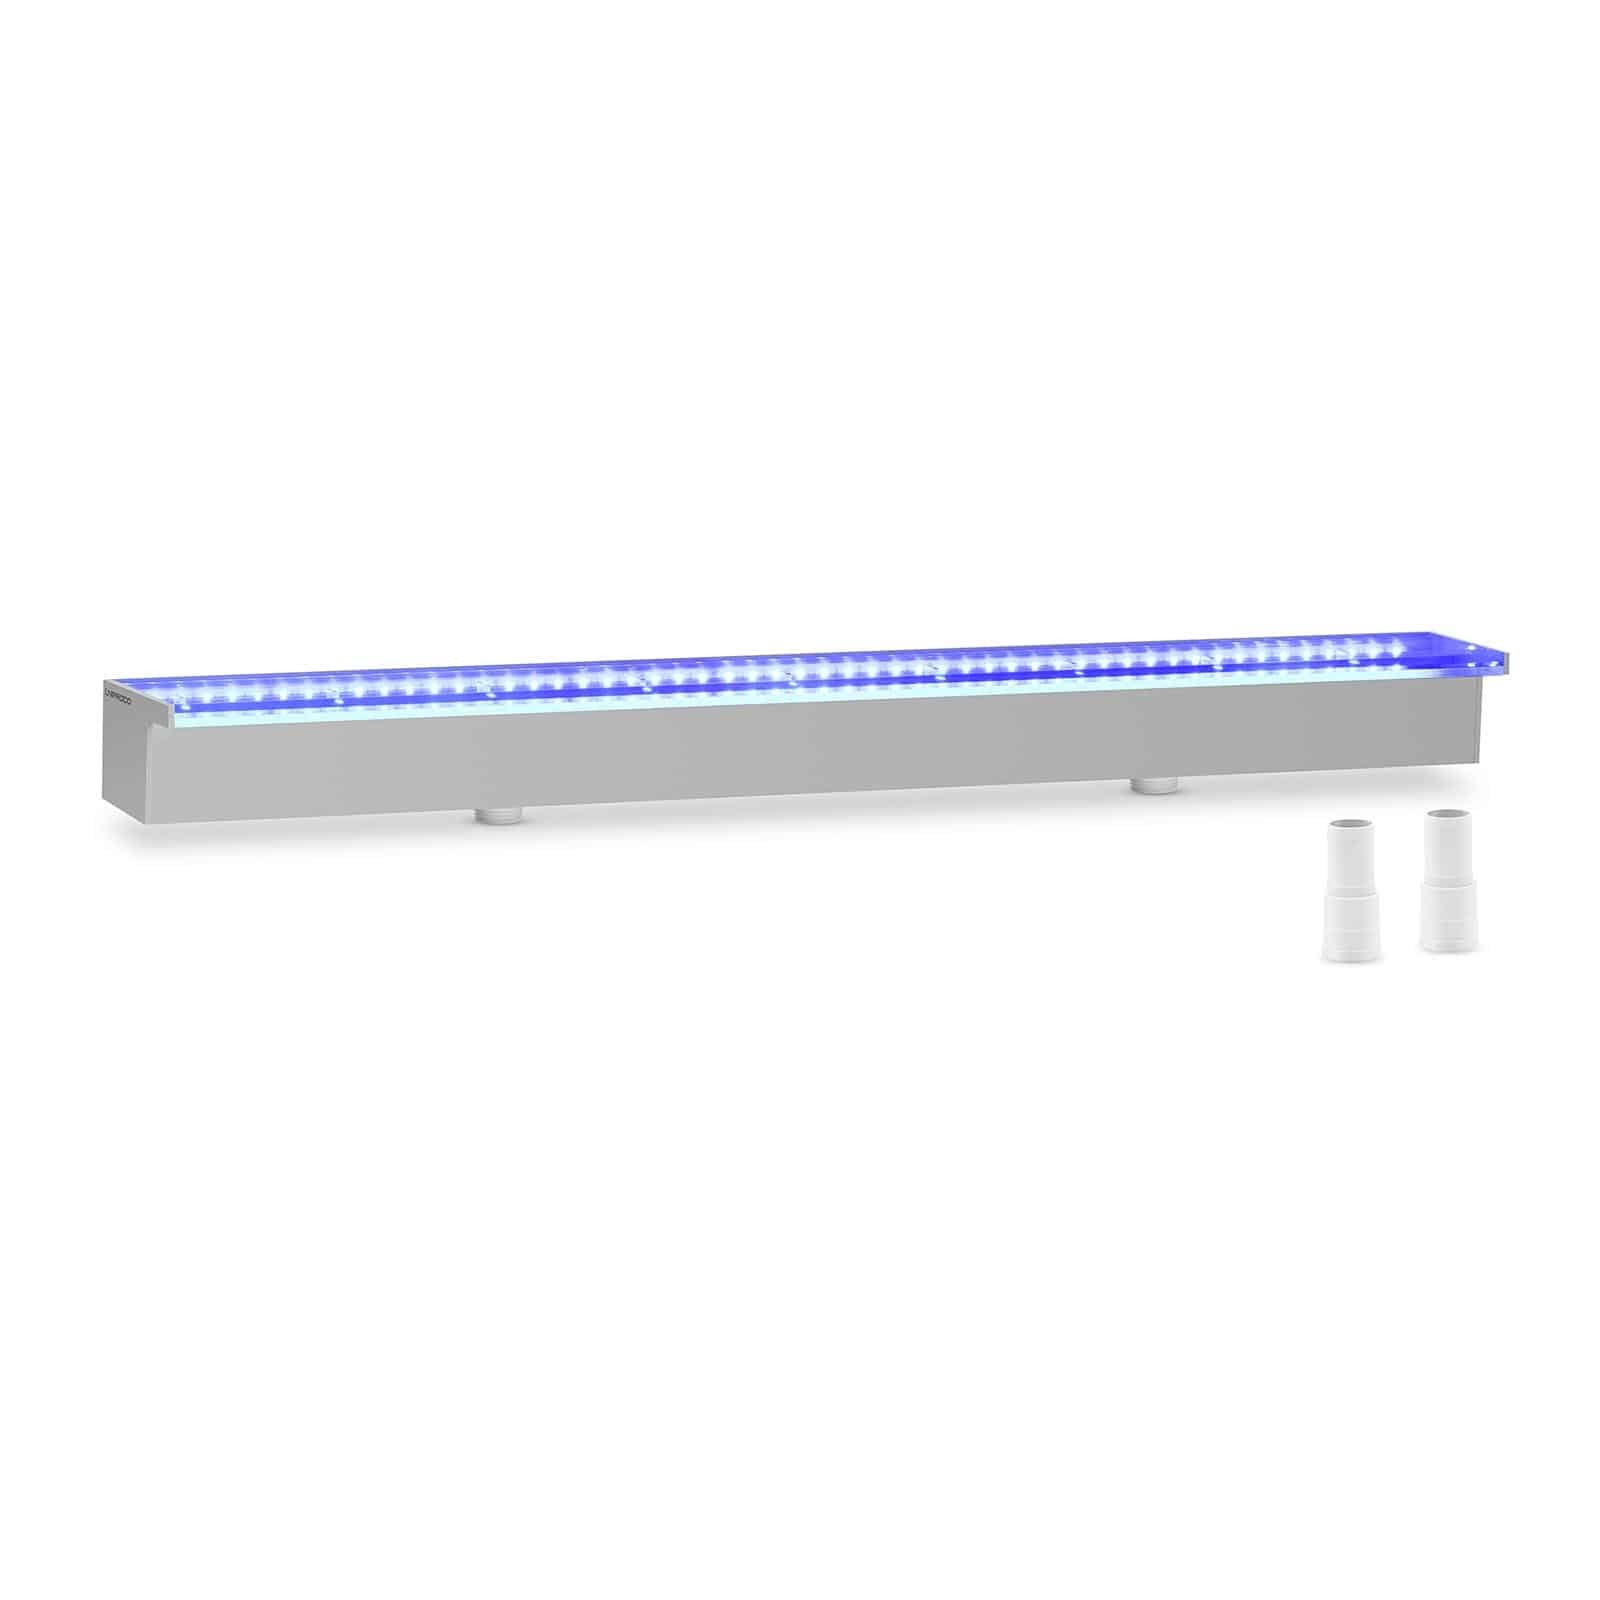 Uniprodo Douche - {{net_lengte}} cm - LED-verlichting - Blauw / Wit - {{lip_lengte}} mm waterafvoer